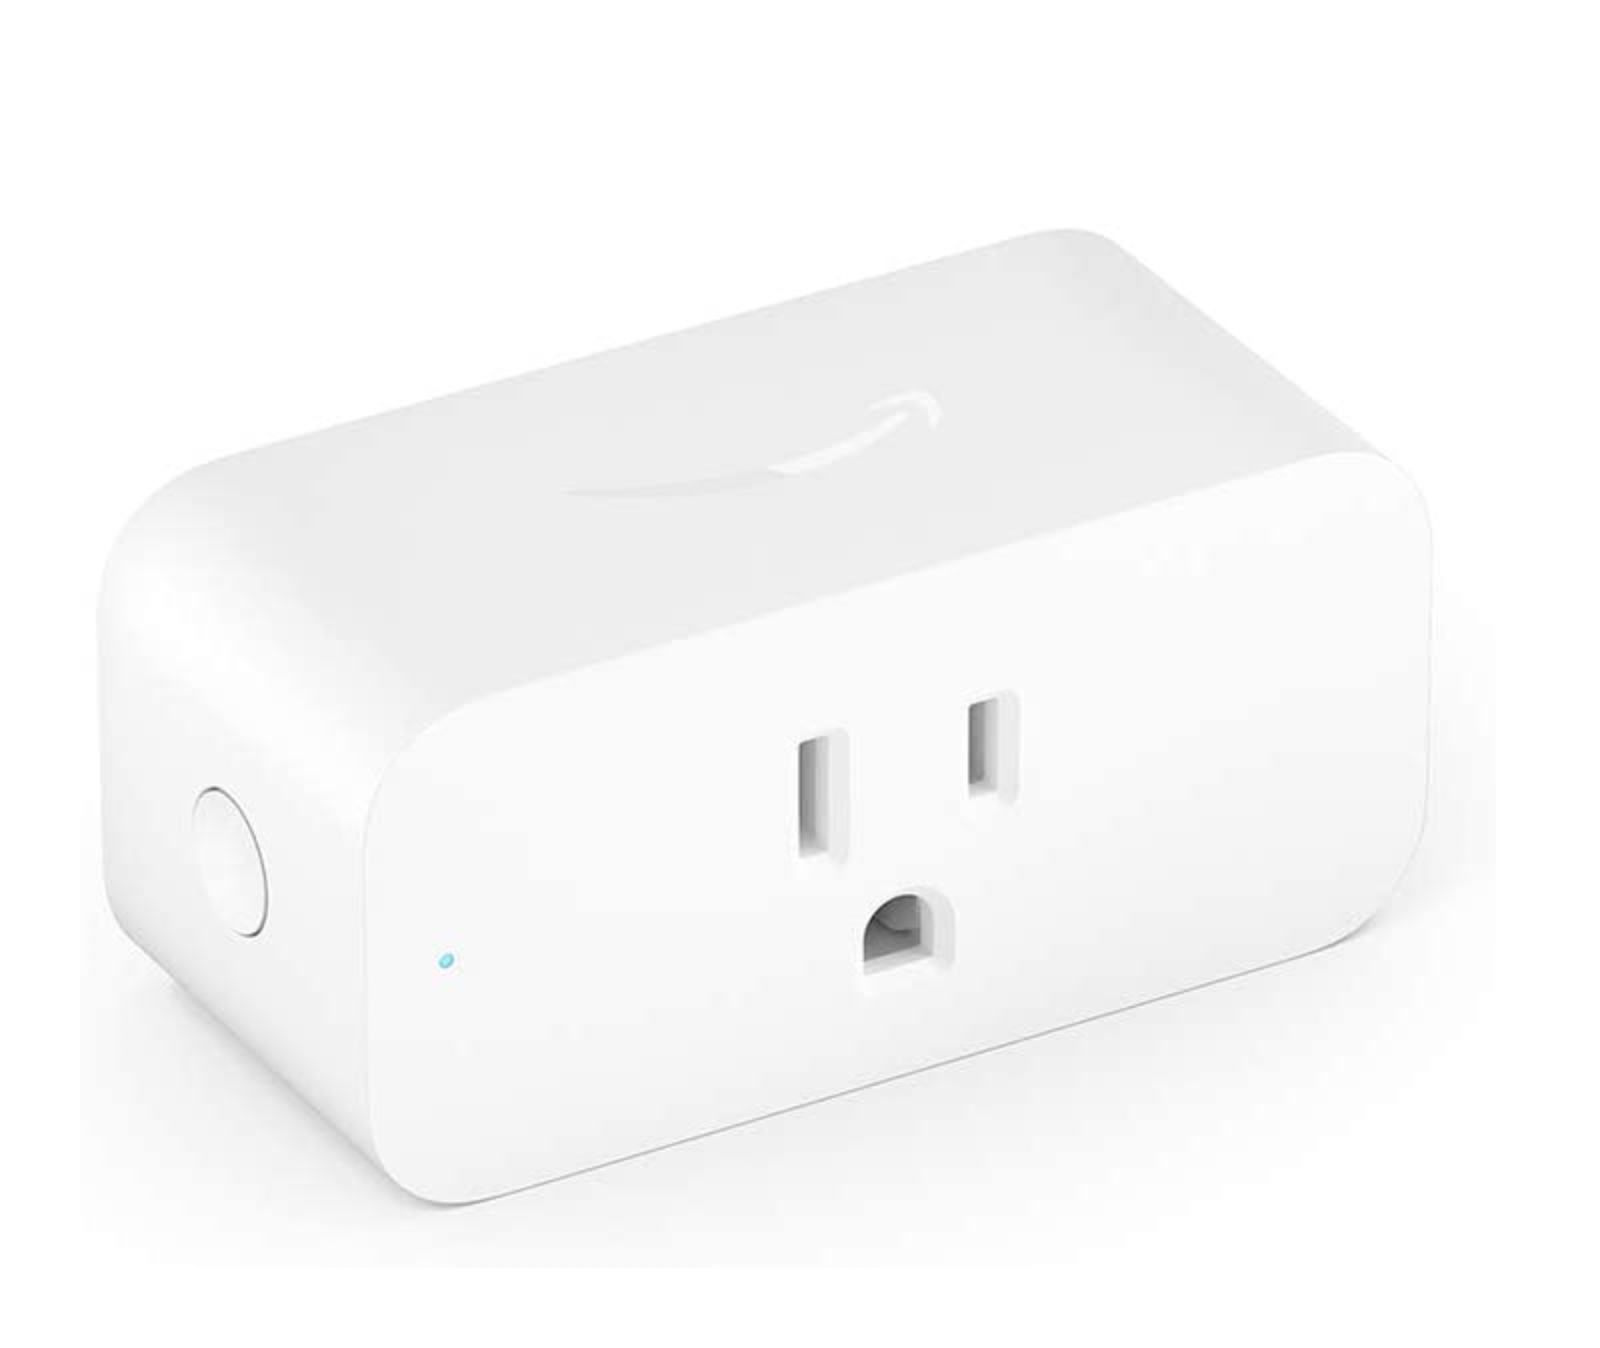 Image Amazon Amazon Smart Plug